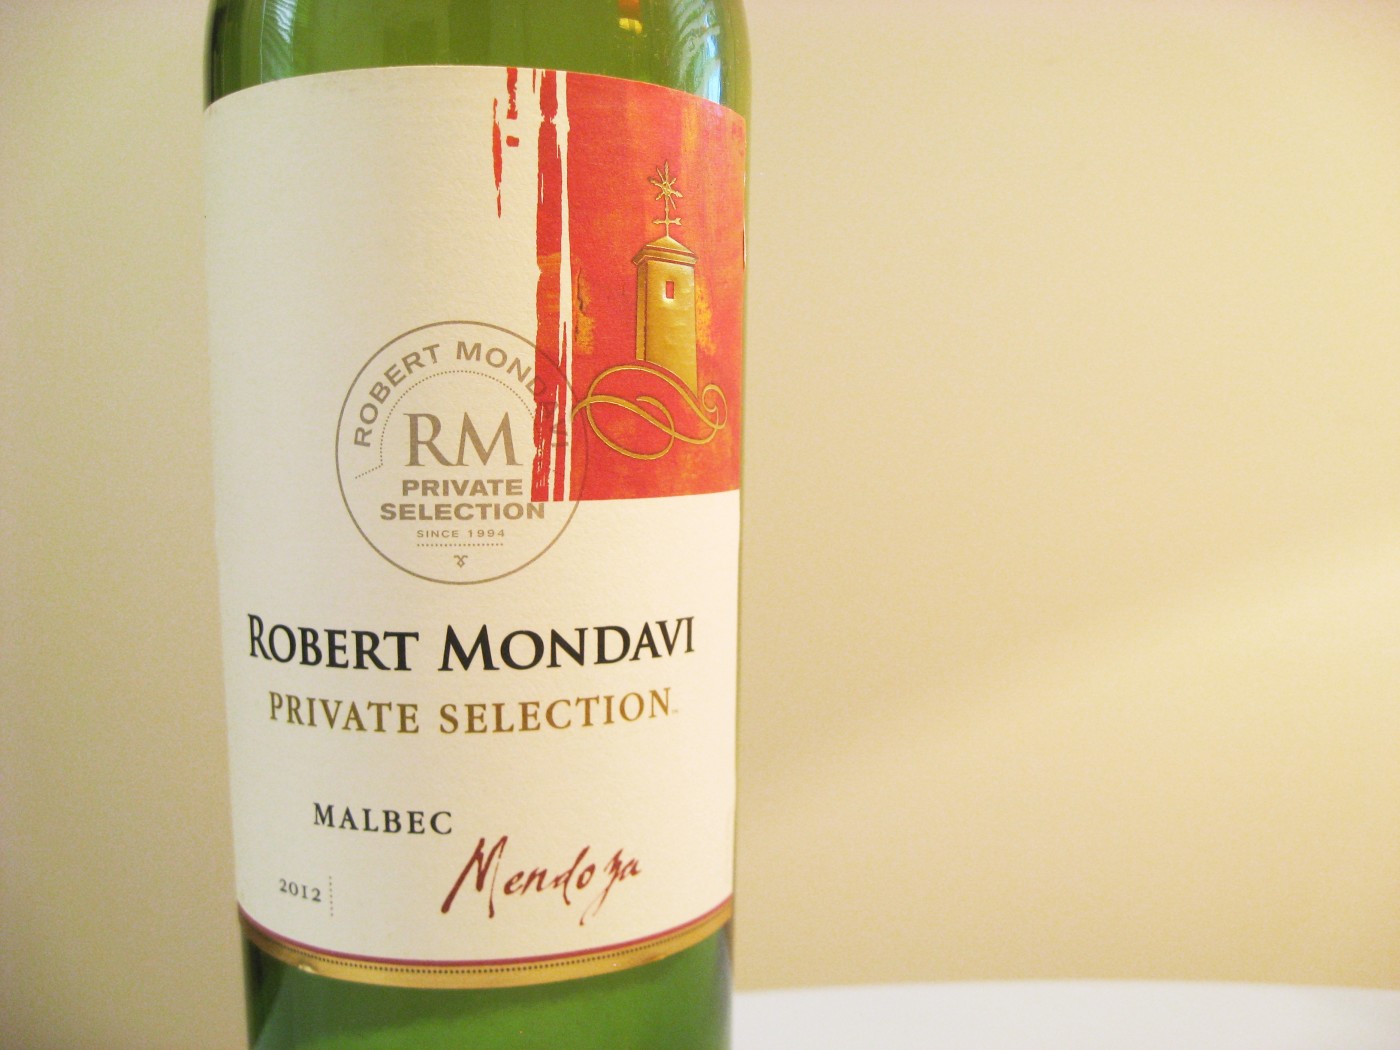 Robert Mondavi Private Selection, Malbec 2012, Mendoza, Argentina, Wine Casual